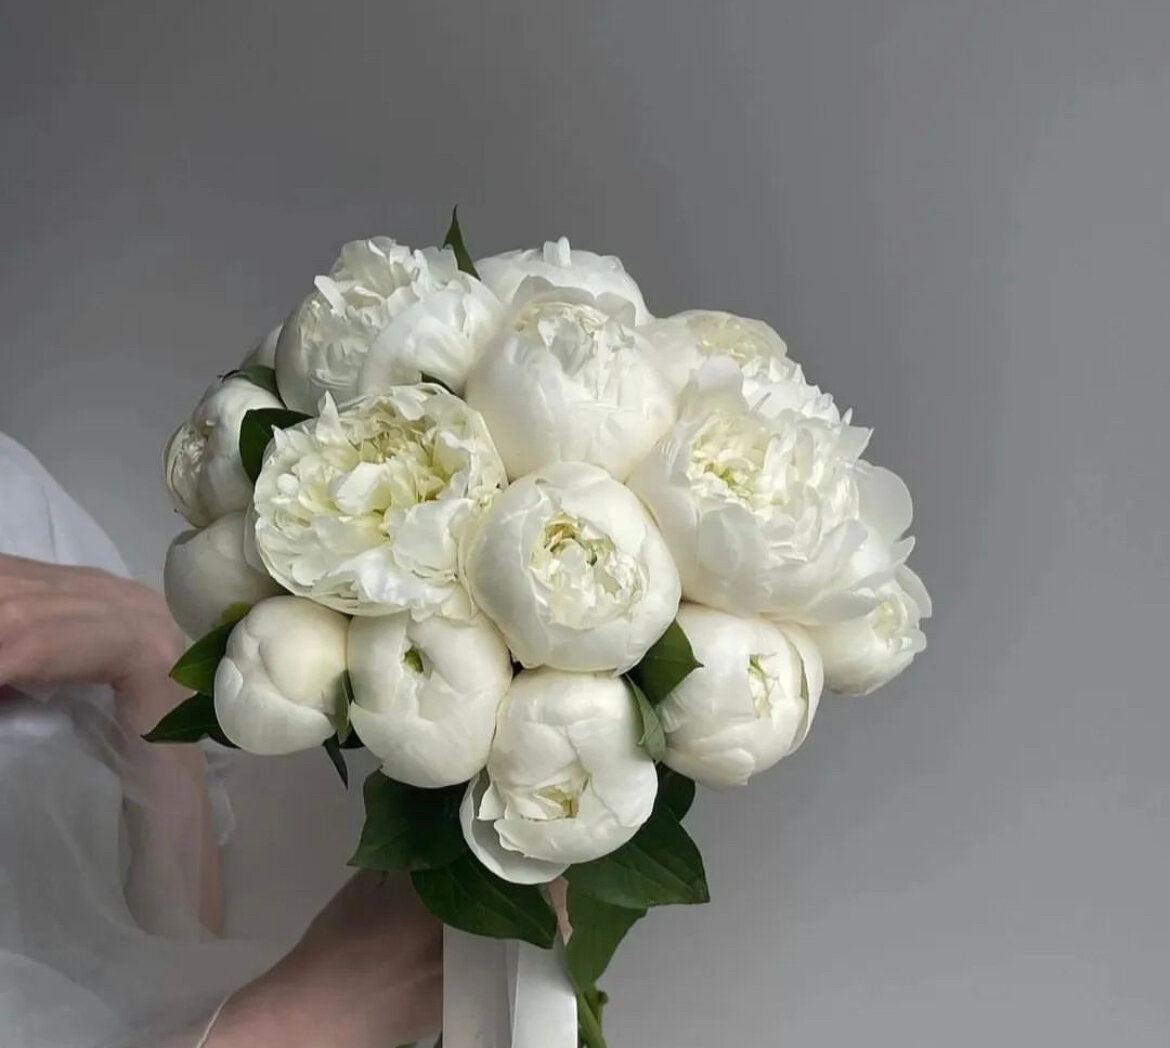 Премиум букет белых пионов свадебный, цветы премиум, шикарный, красивый букет цветов, пионы белые.